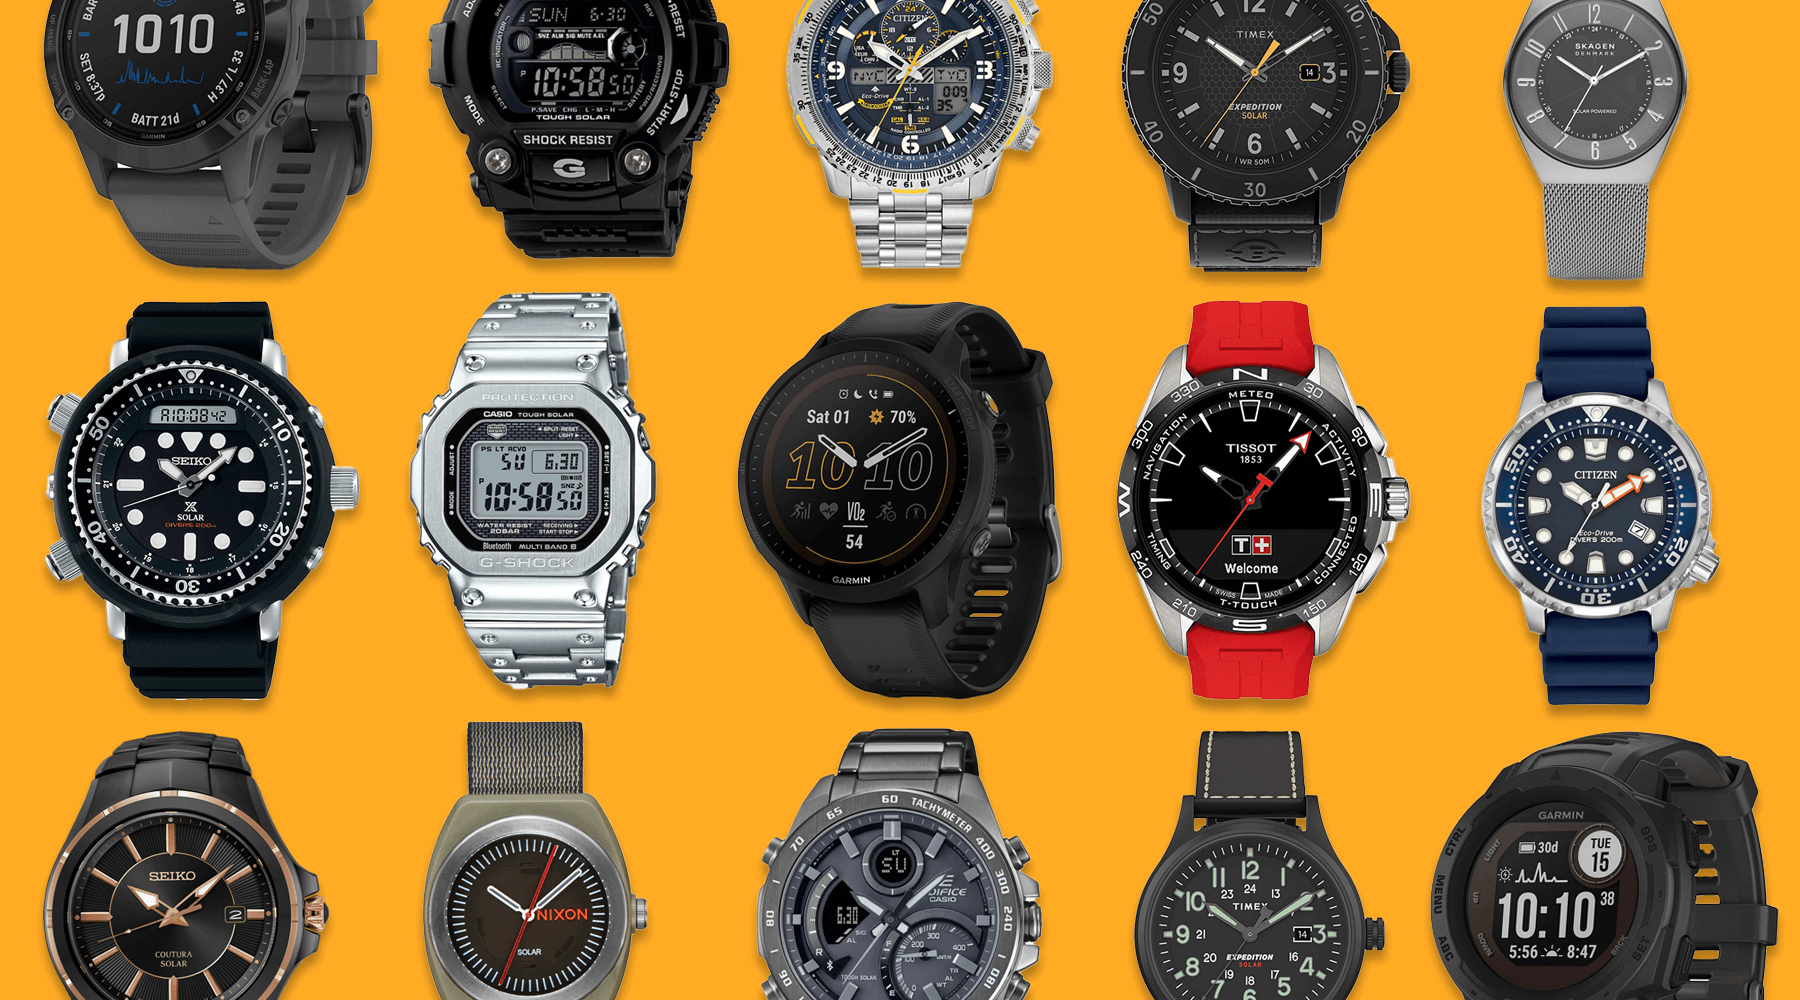 Best Solar Watches